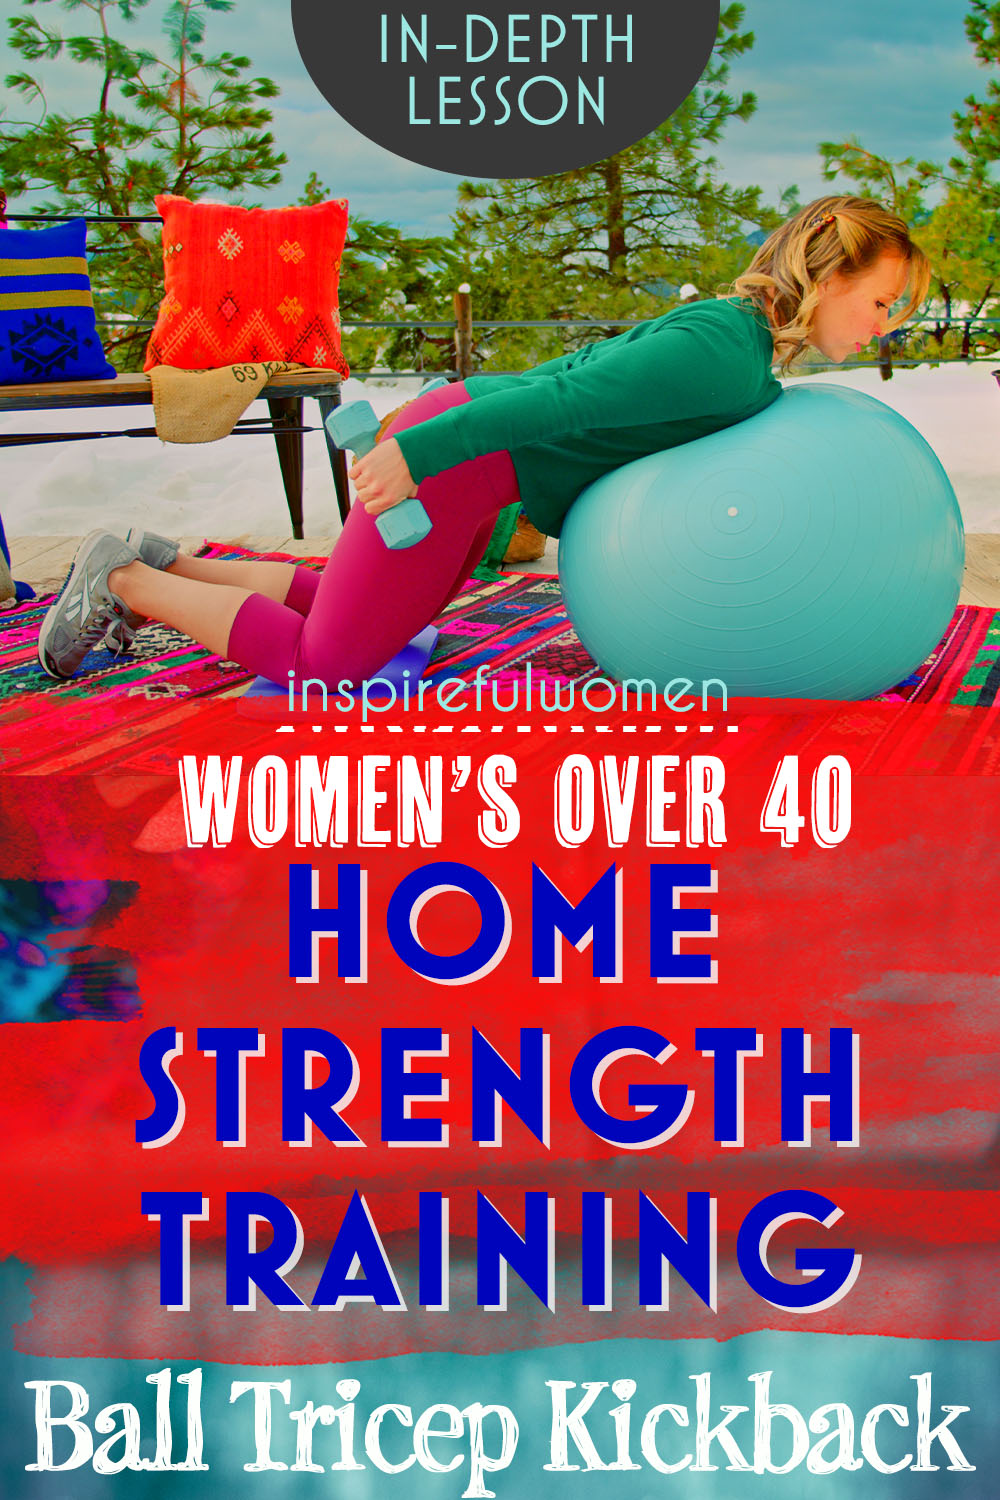 triceps-kickback-kneeling-bent-over-stability-ball-dumbbells-home-strength-training-women-40+